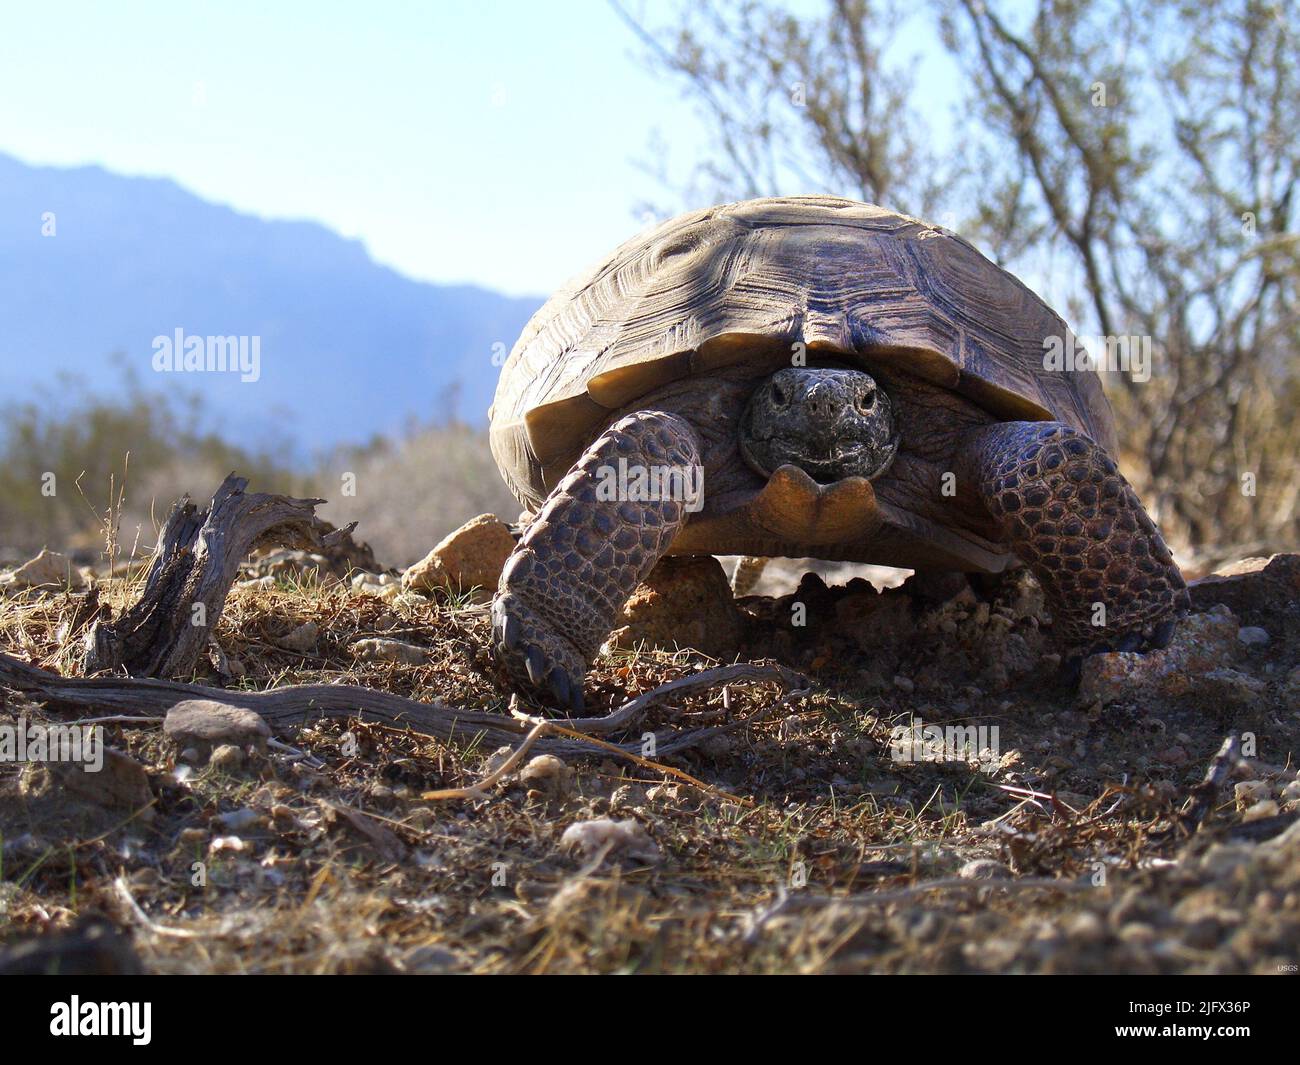 La tortue désertique (Gopherus agassizii) est une espèce de tortue de la famille des Testudinidae. L'espèce est indigène aux déserts de Mojave et de Sonoran du sud-ouest des États-Unis et du nord-ouest du Mexique, et au maquis sinaloen du nord-ouest du Mexique.[G. agassizii est distribué dans l'ouest de l'Arizona, le sud-est de la Californie, le sud du Nevada et le sud-ouest de l'Utah. Crédit USGS Banque D'Images